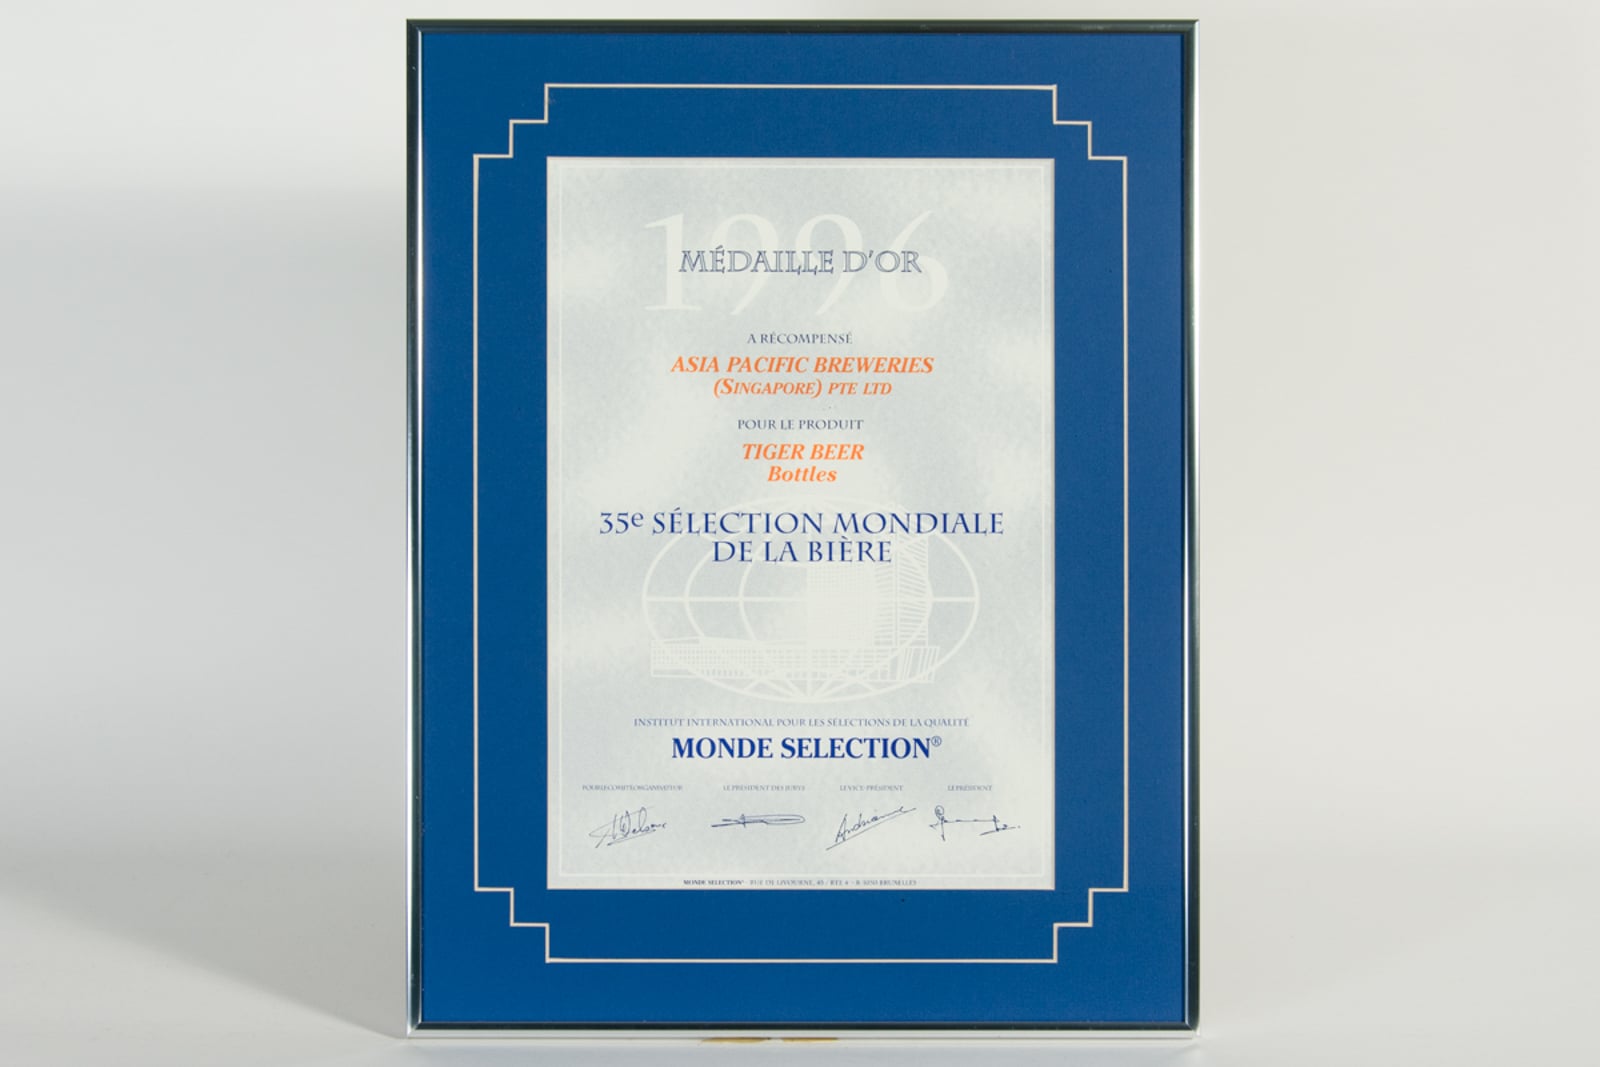 Tiger Beer (Bottles) Médaille d'Or, Monde Selection Certificate 1996